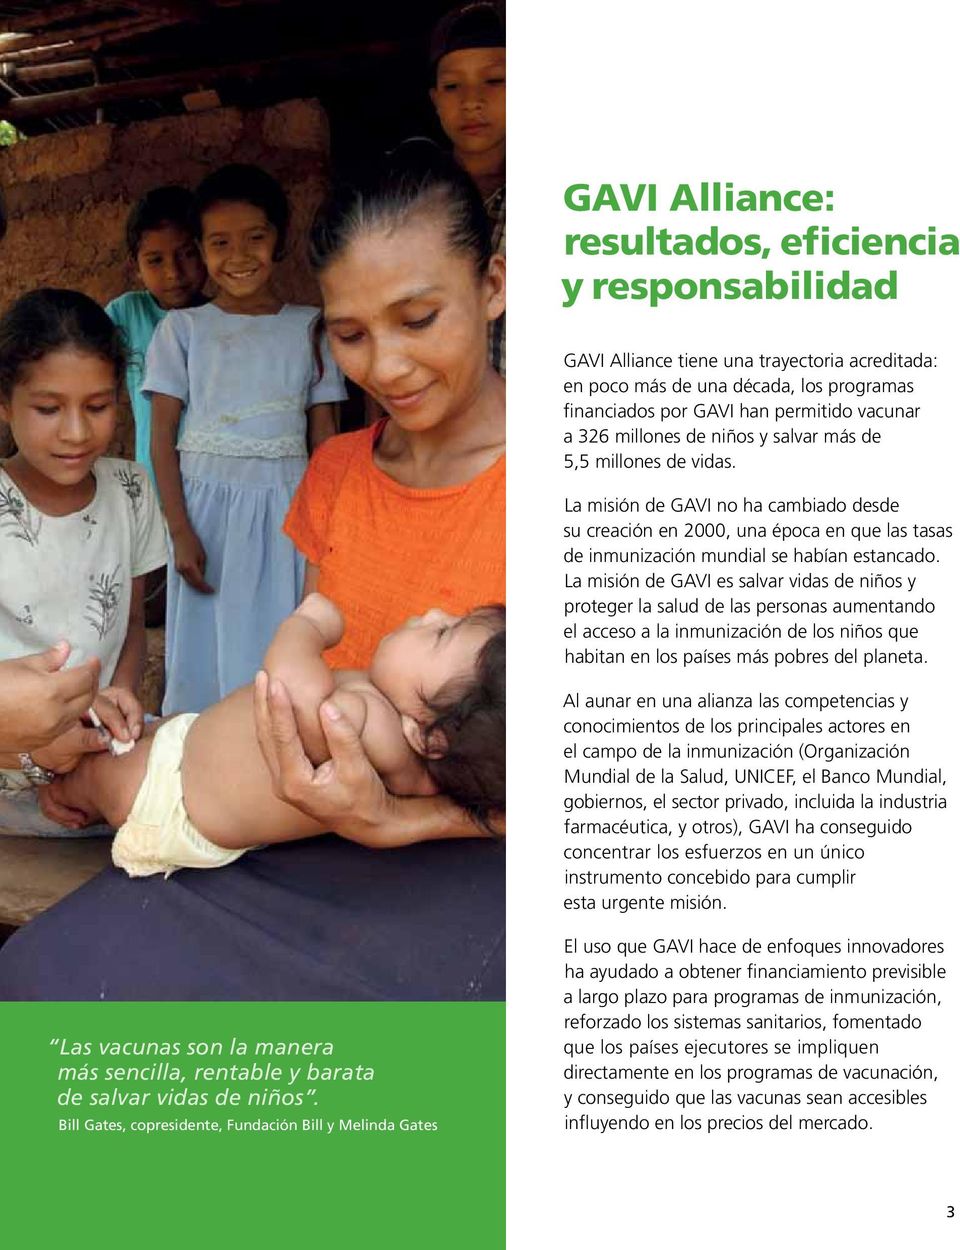 La misión de GAVI es salvar vidas de niños y proteger la salud de las personas aumentando el acceso a la inmunización de los niños que habitan en los países más pobres del planeta.